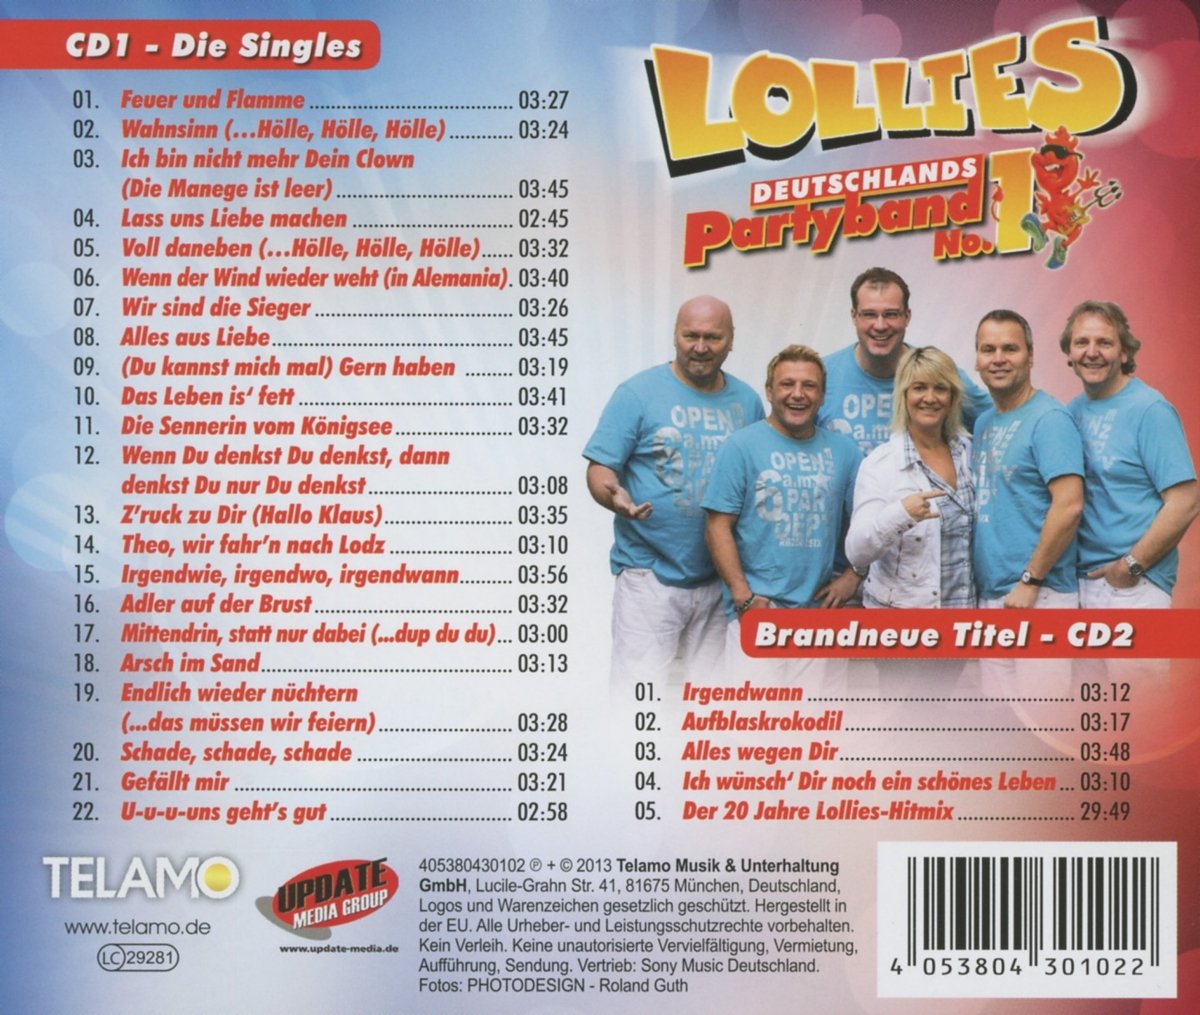 Lollies - Das Beste von Deutschlands Partyband No.1 (2020)